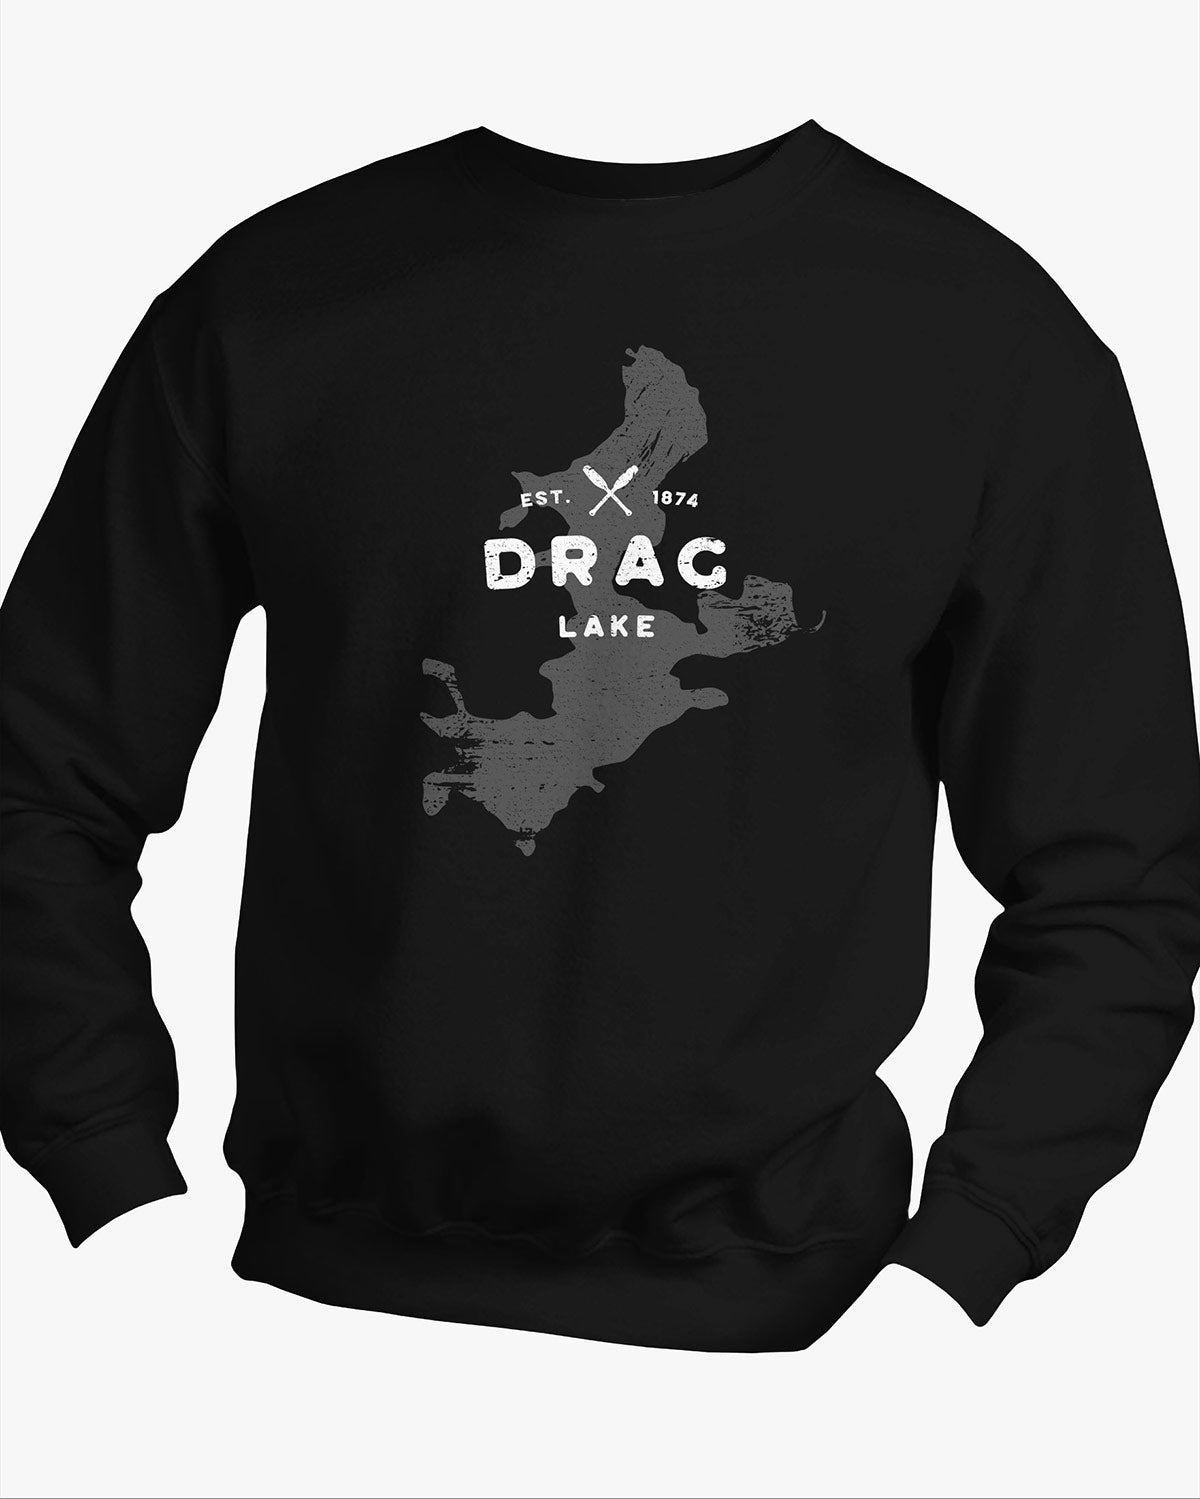 Lake Series - Drag Lake - Sweater